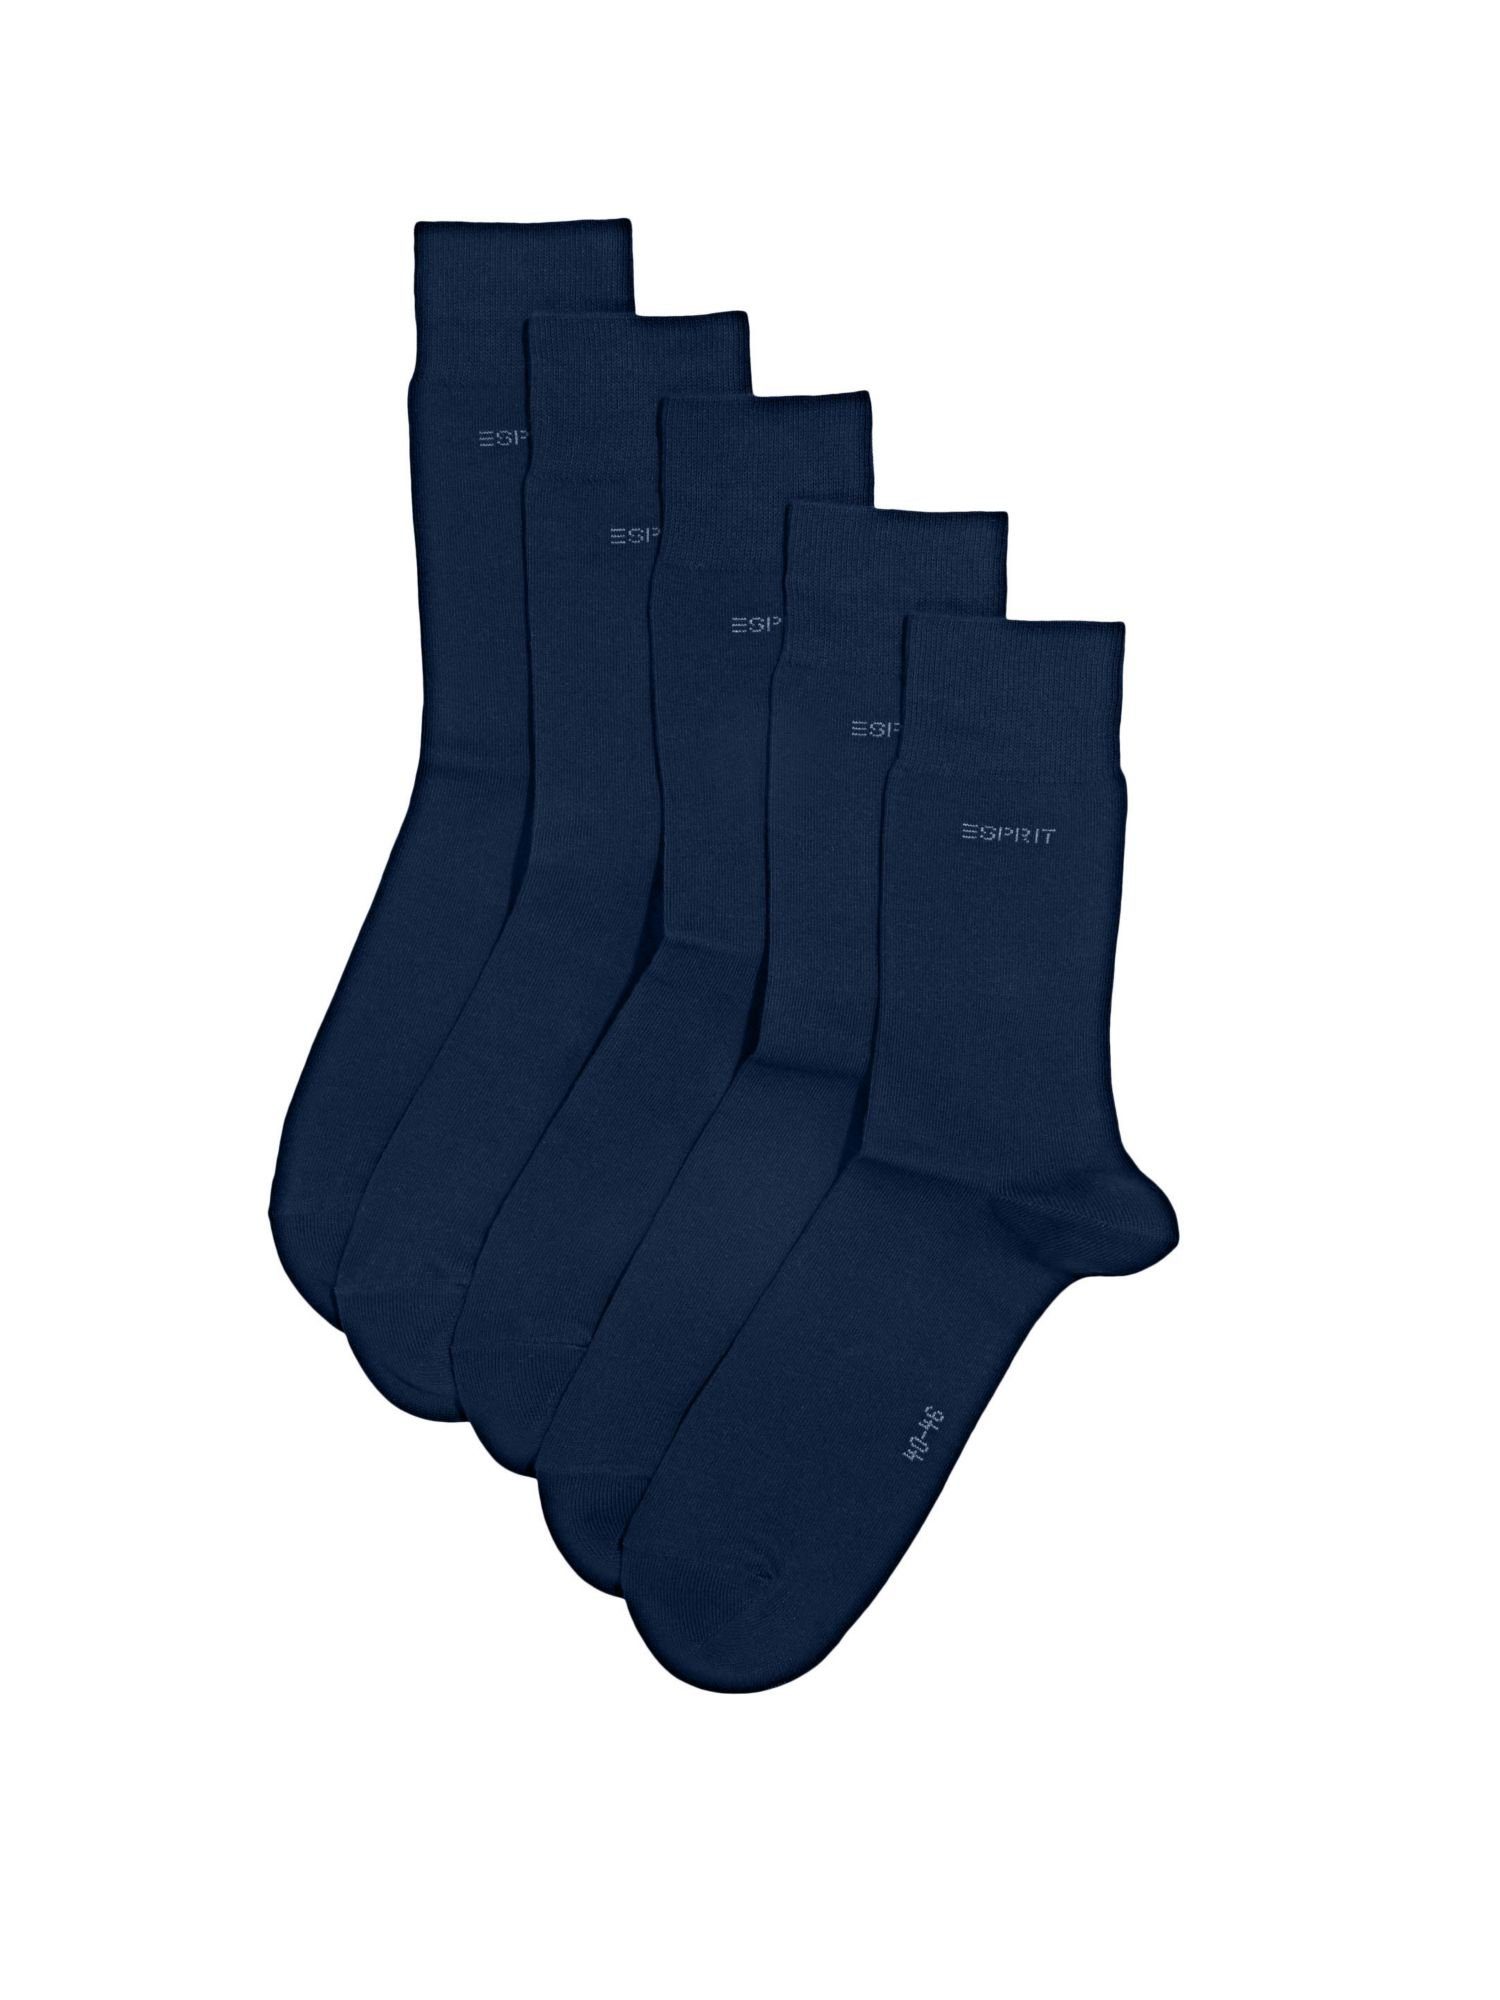 Esprit Socken 5er-Pack Socken, Bio-Baumwollmix MARINE